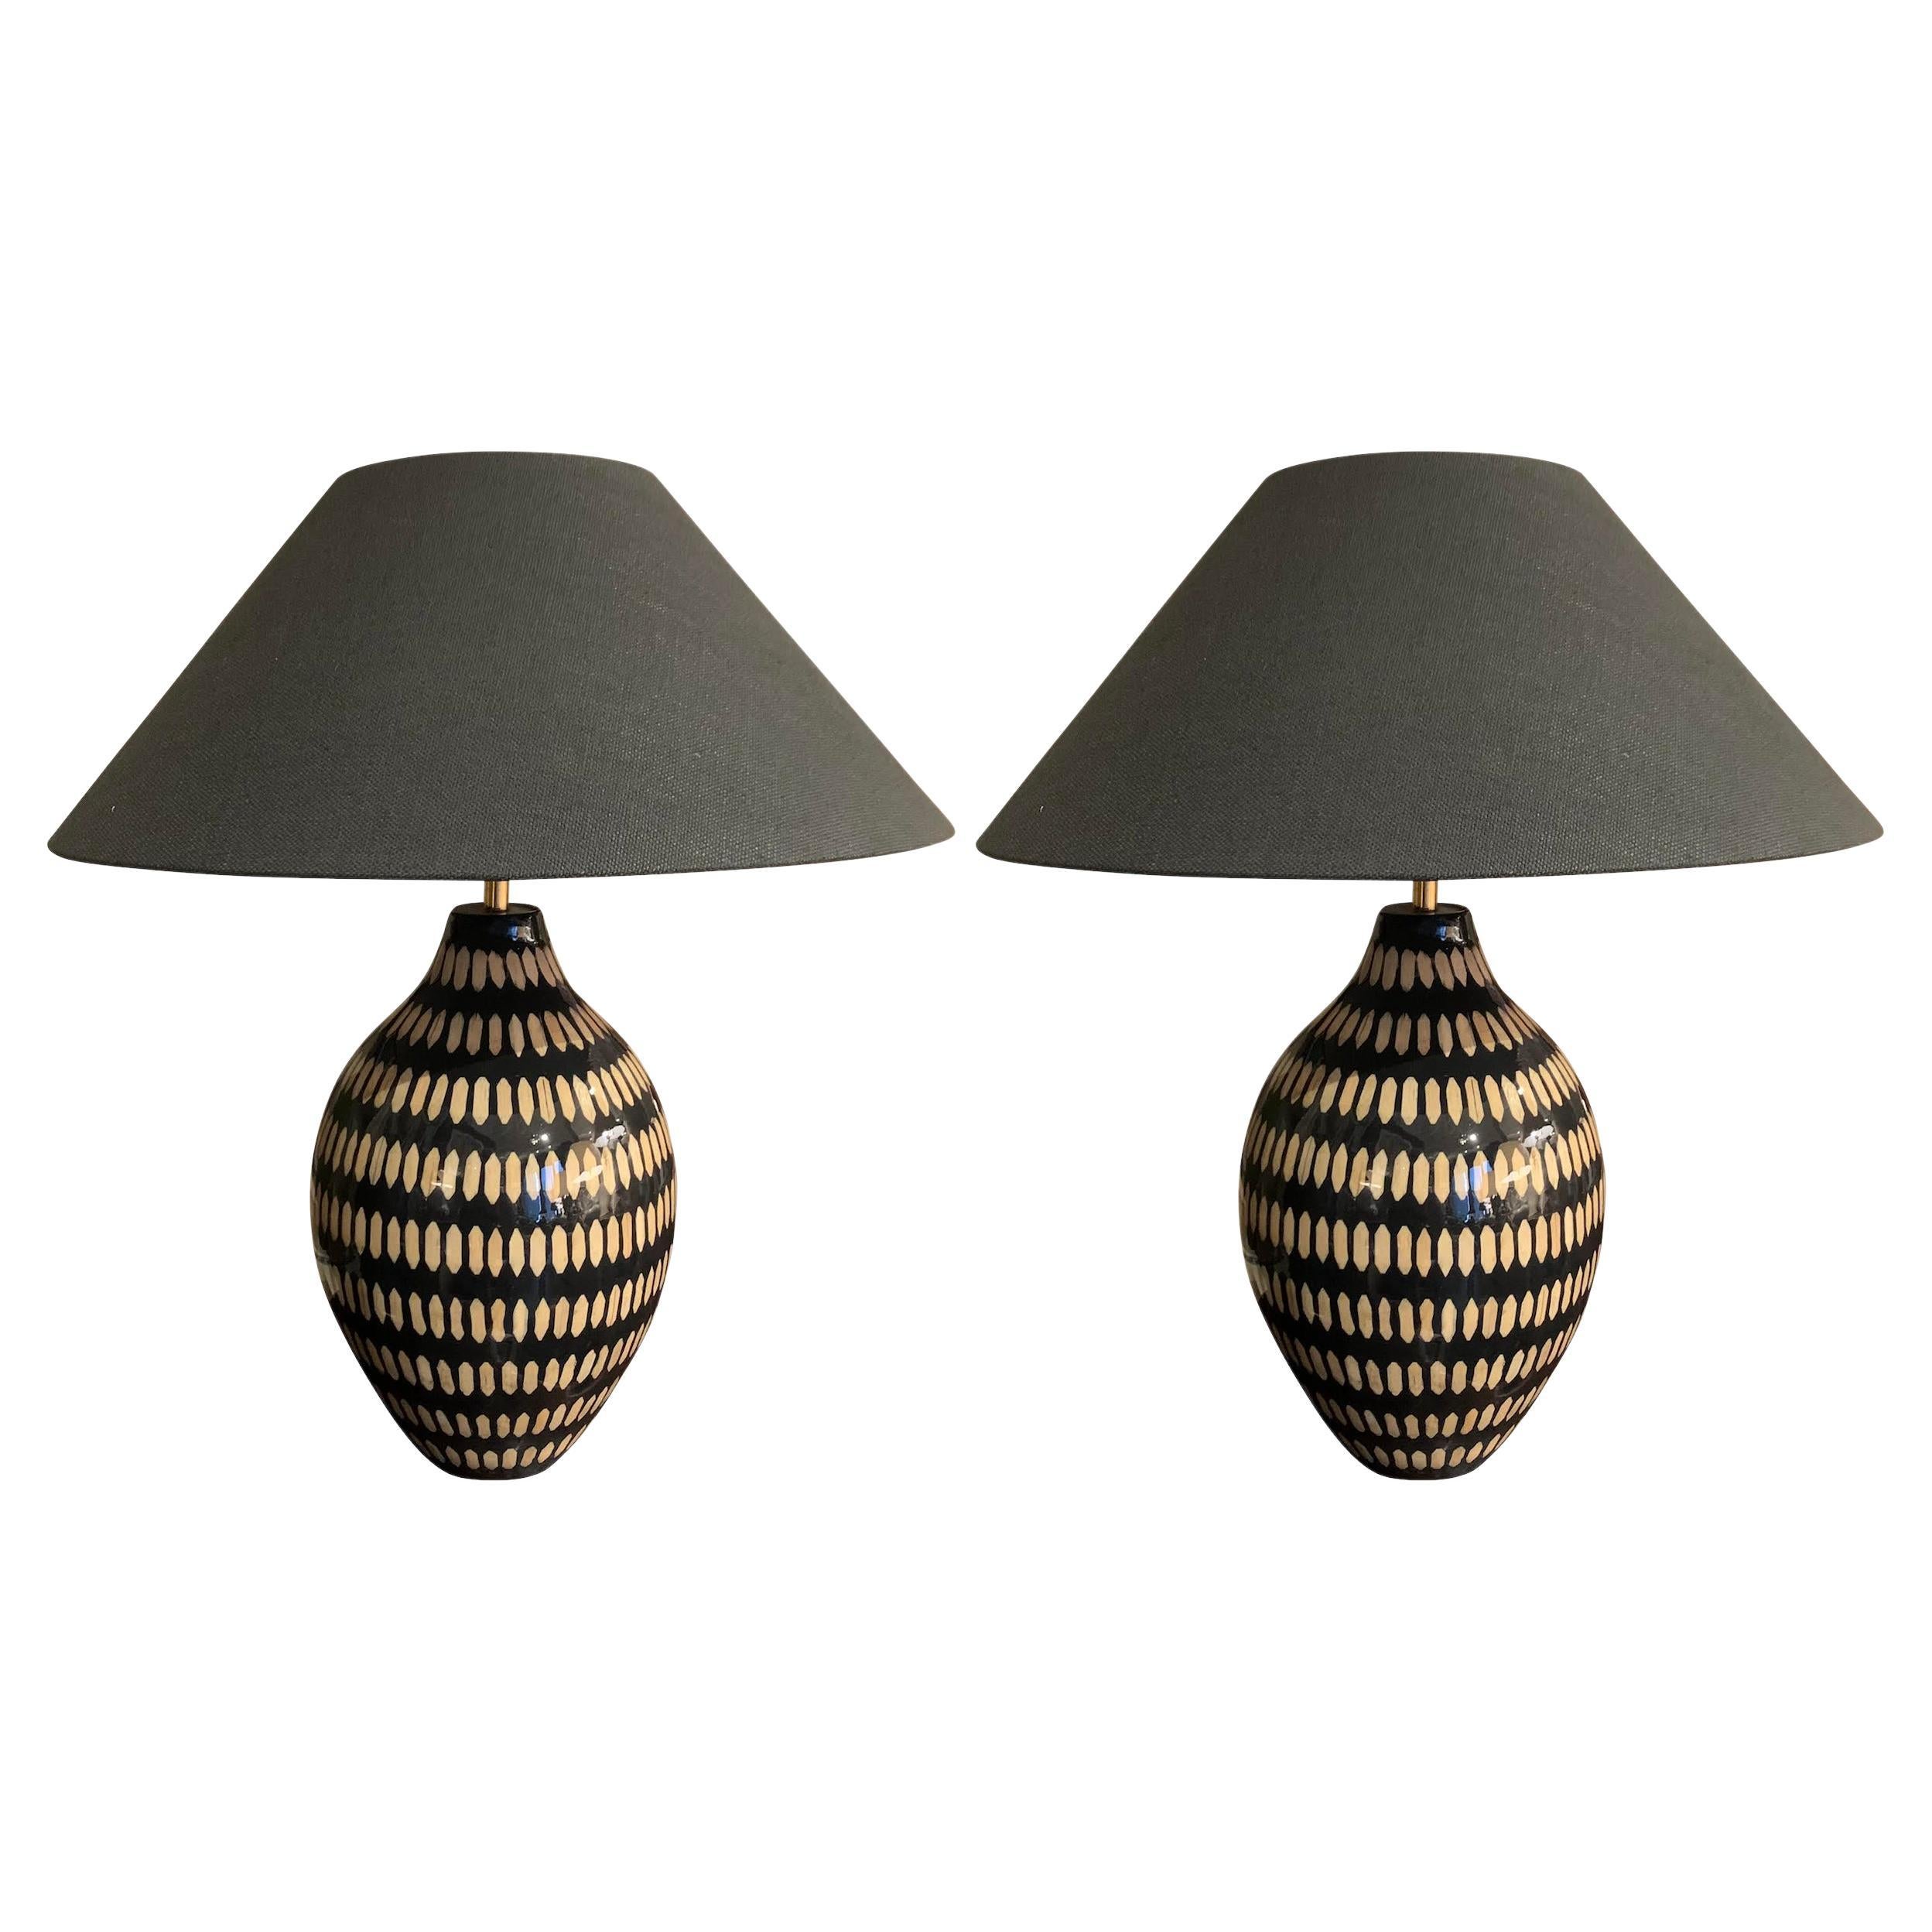 Schwarz mit cremefarben lackiertem Bambus-Paar Tischlampen, China, Contemporary